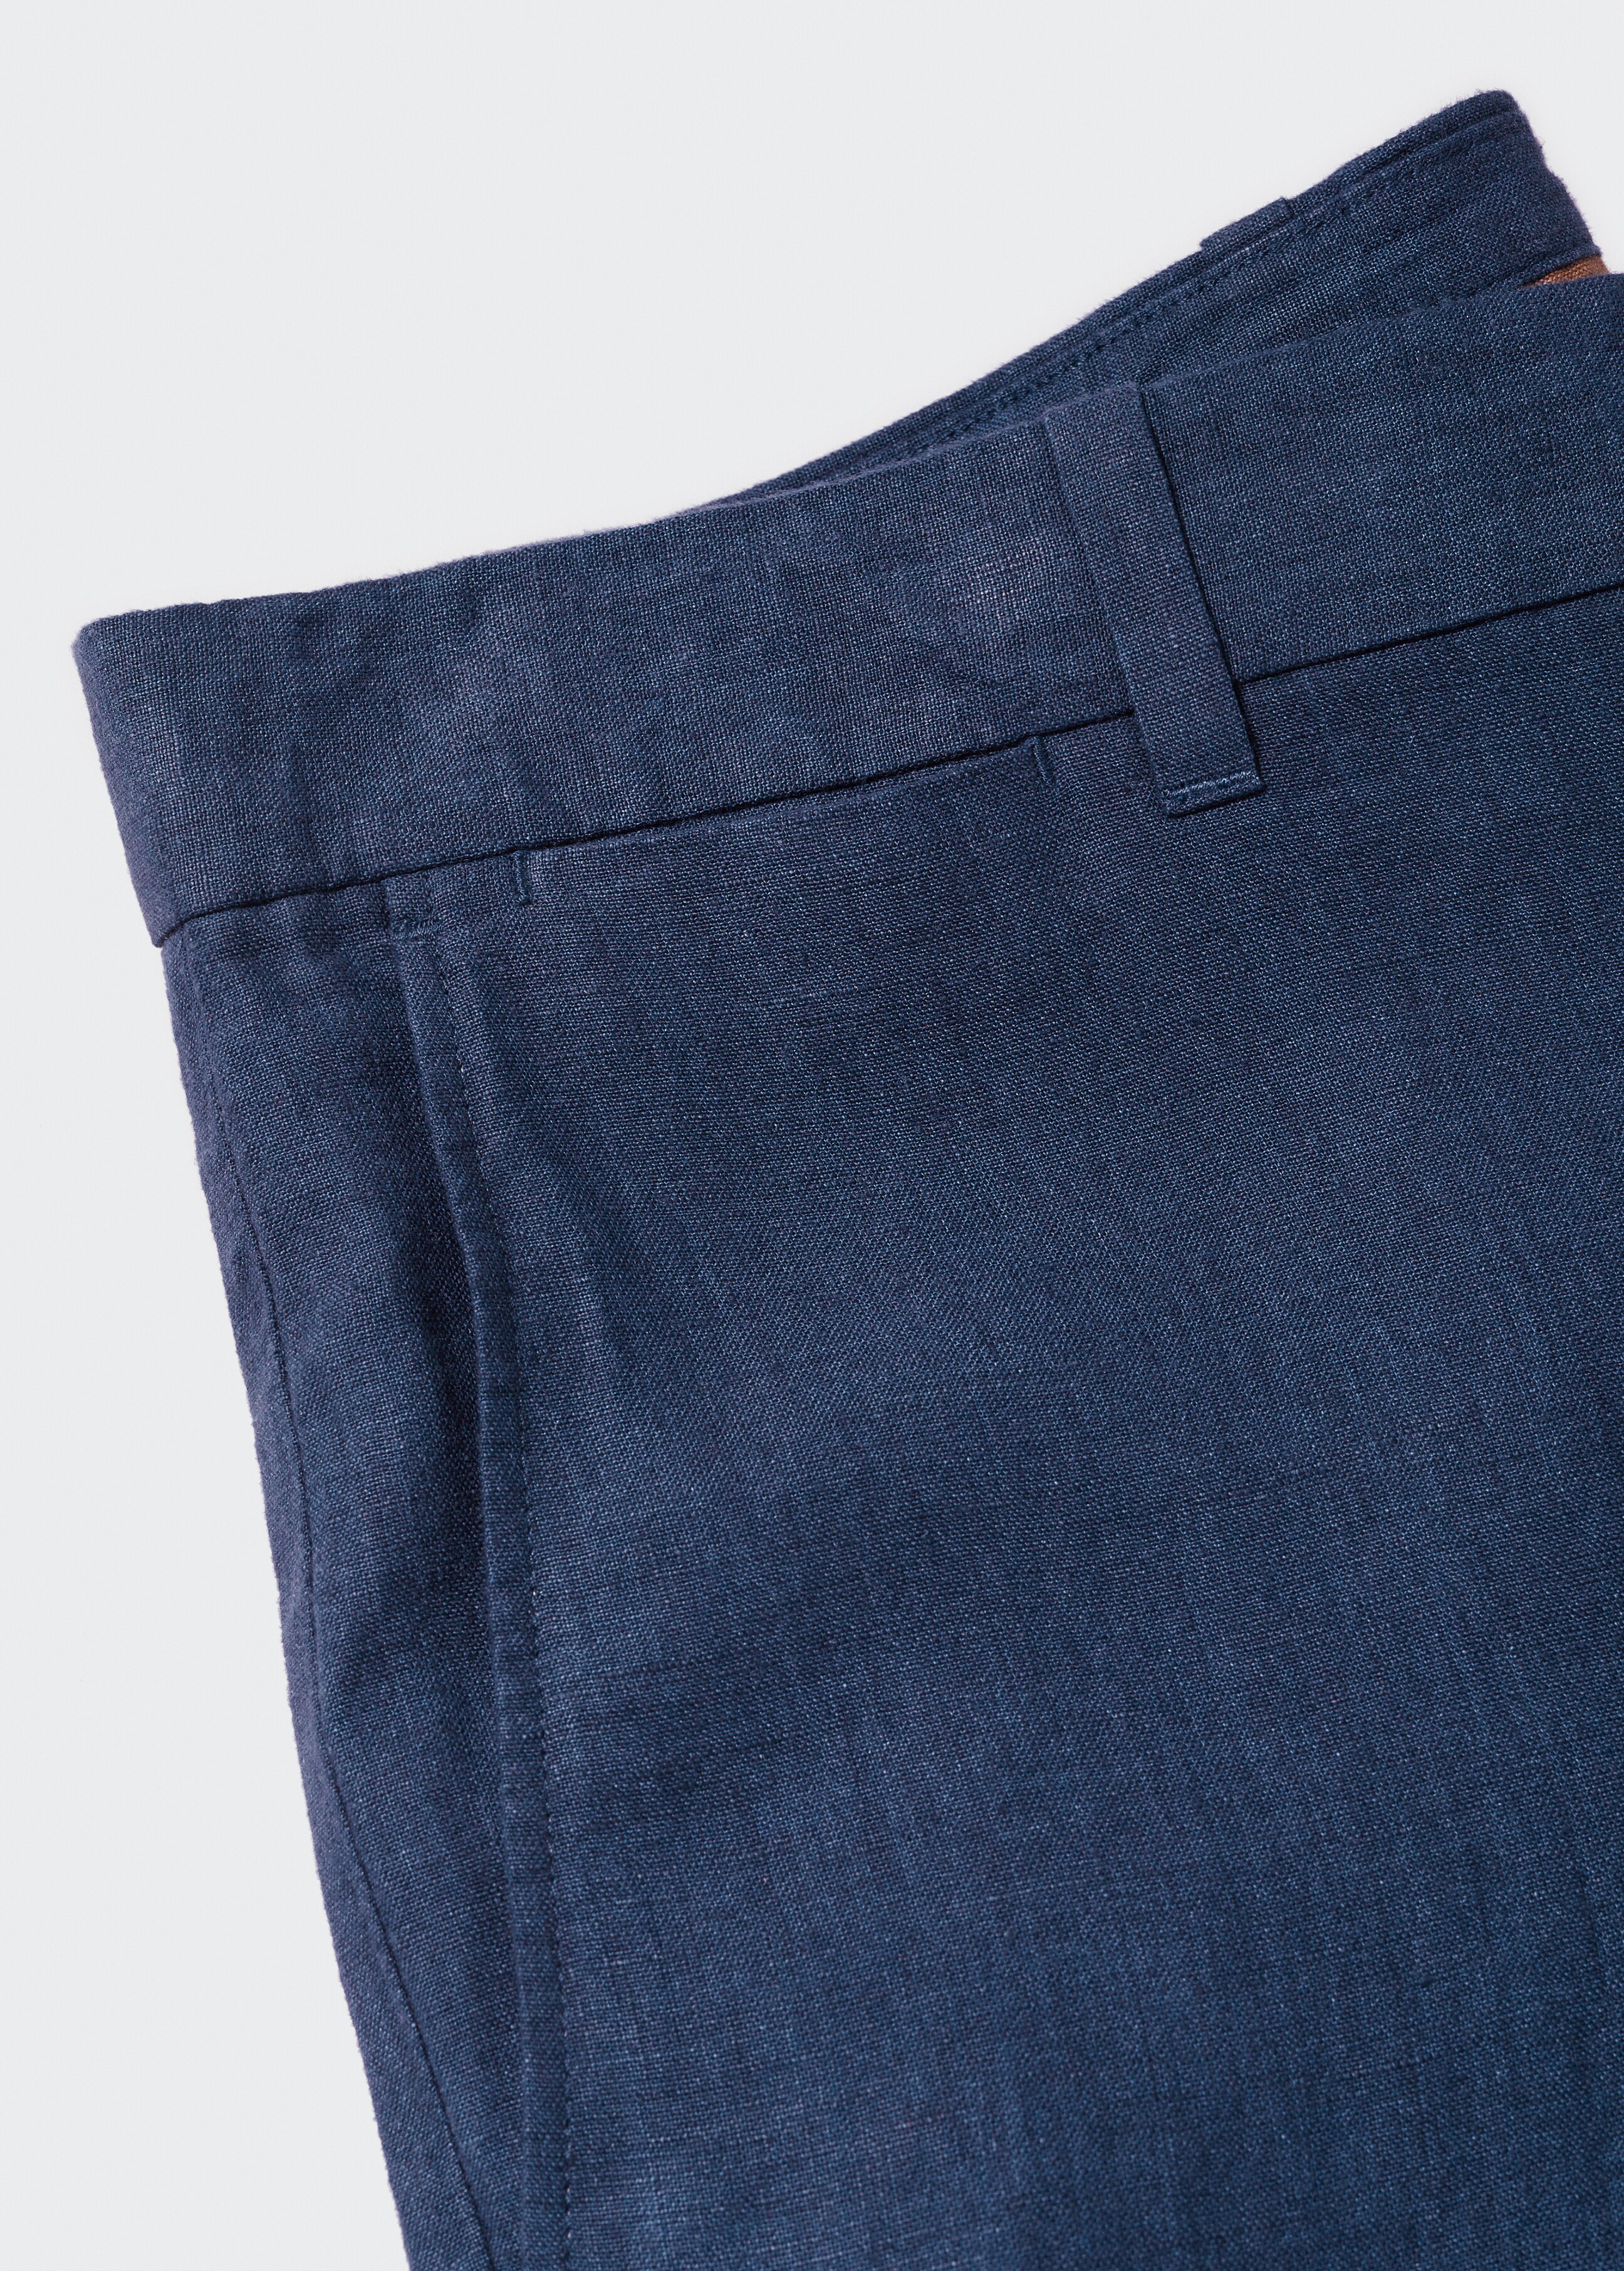 Pantaloni 100% lino slim fit - Dettaglio dell'articolo 8